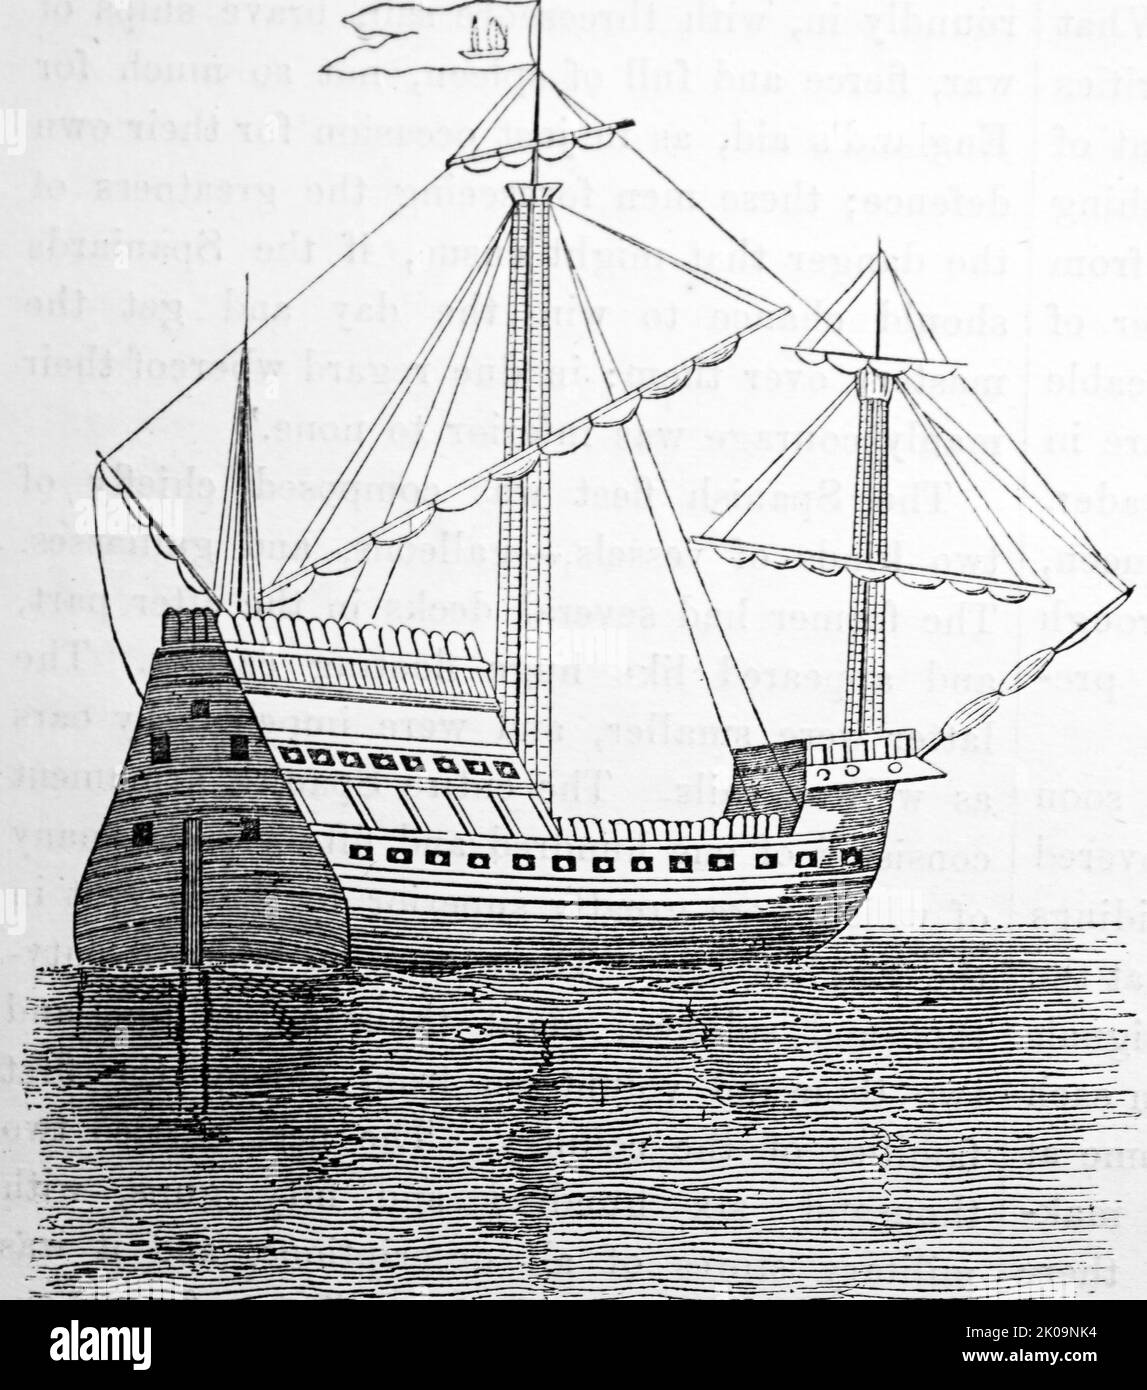 Spanische Galeone. Galeonen waren große, mehrstockige Segelschiffe, die von den europäischen Staaten im Zeitalter der Segel zwischen dem 16.. Und 18.. Jahrhundert als bewaffnete Frachtführer eingesetzt wurden und die wichtigsten Schiffe, die bis zu den anglo-niederländischen Kriegen Mitte 1600s als Kriegsschiffe entworfen wurden. Stockfoto